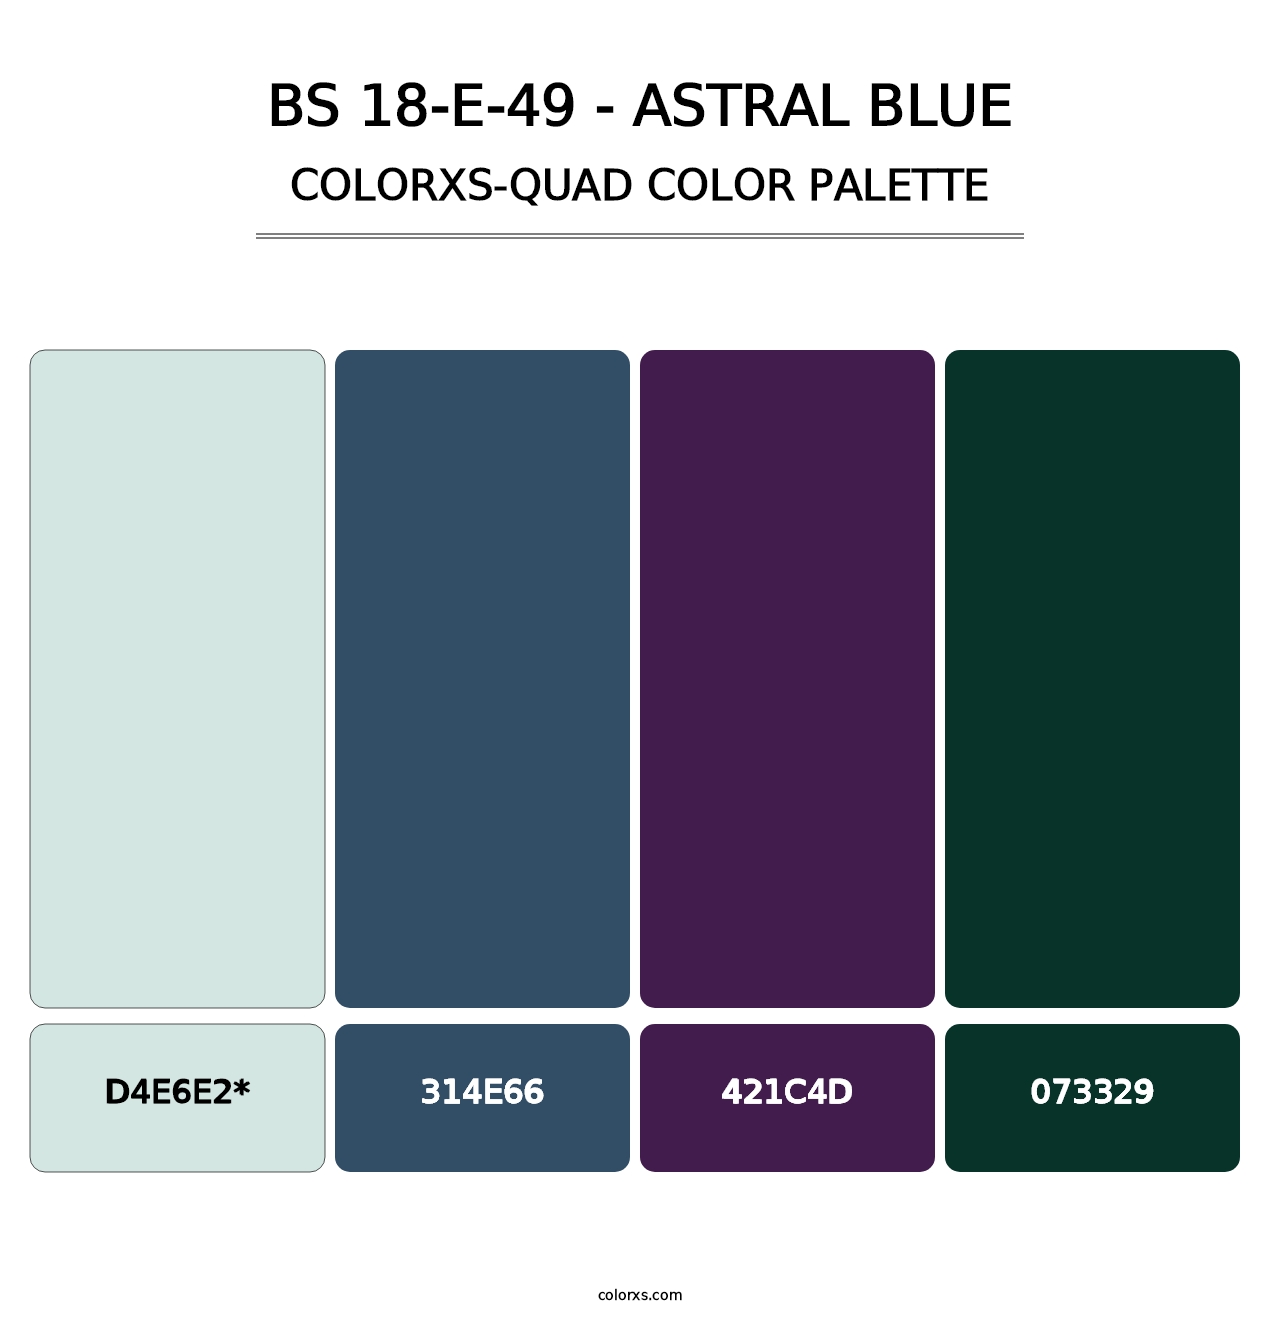 BS 18-E-49 - Astral Blue - Colorxs Quad Palette